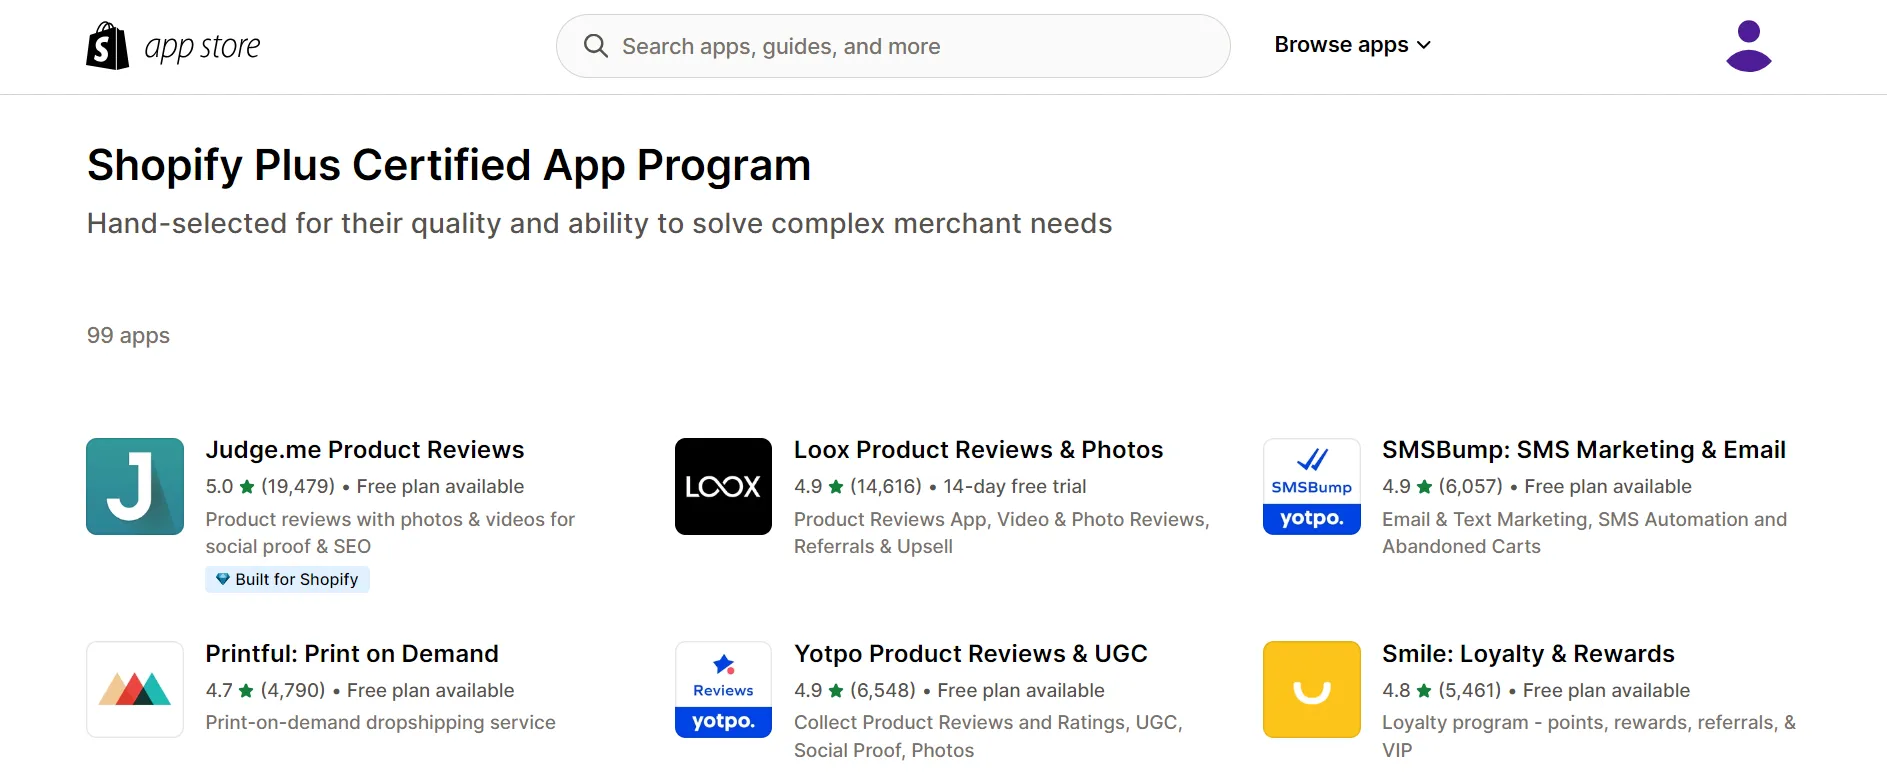 Shopify Plus Certified App Program